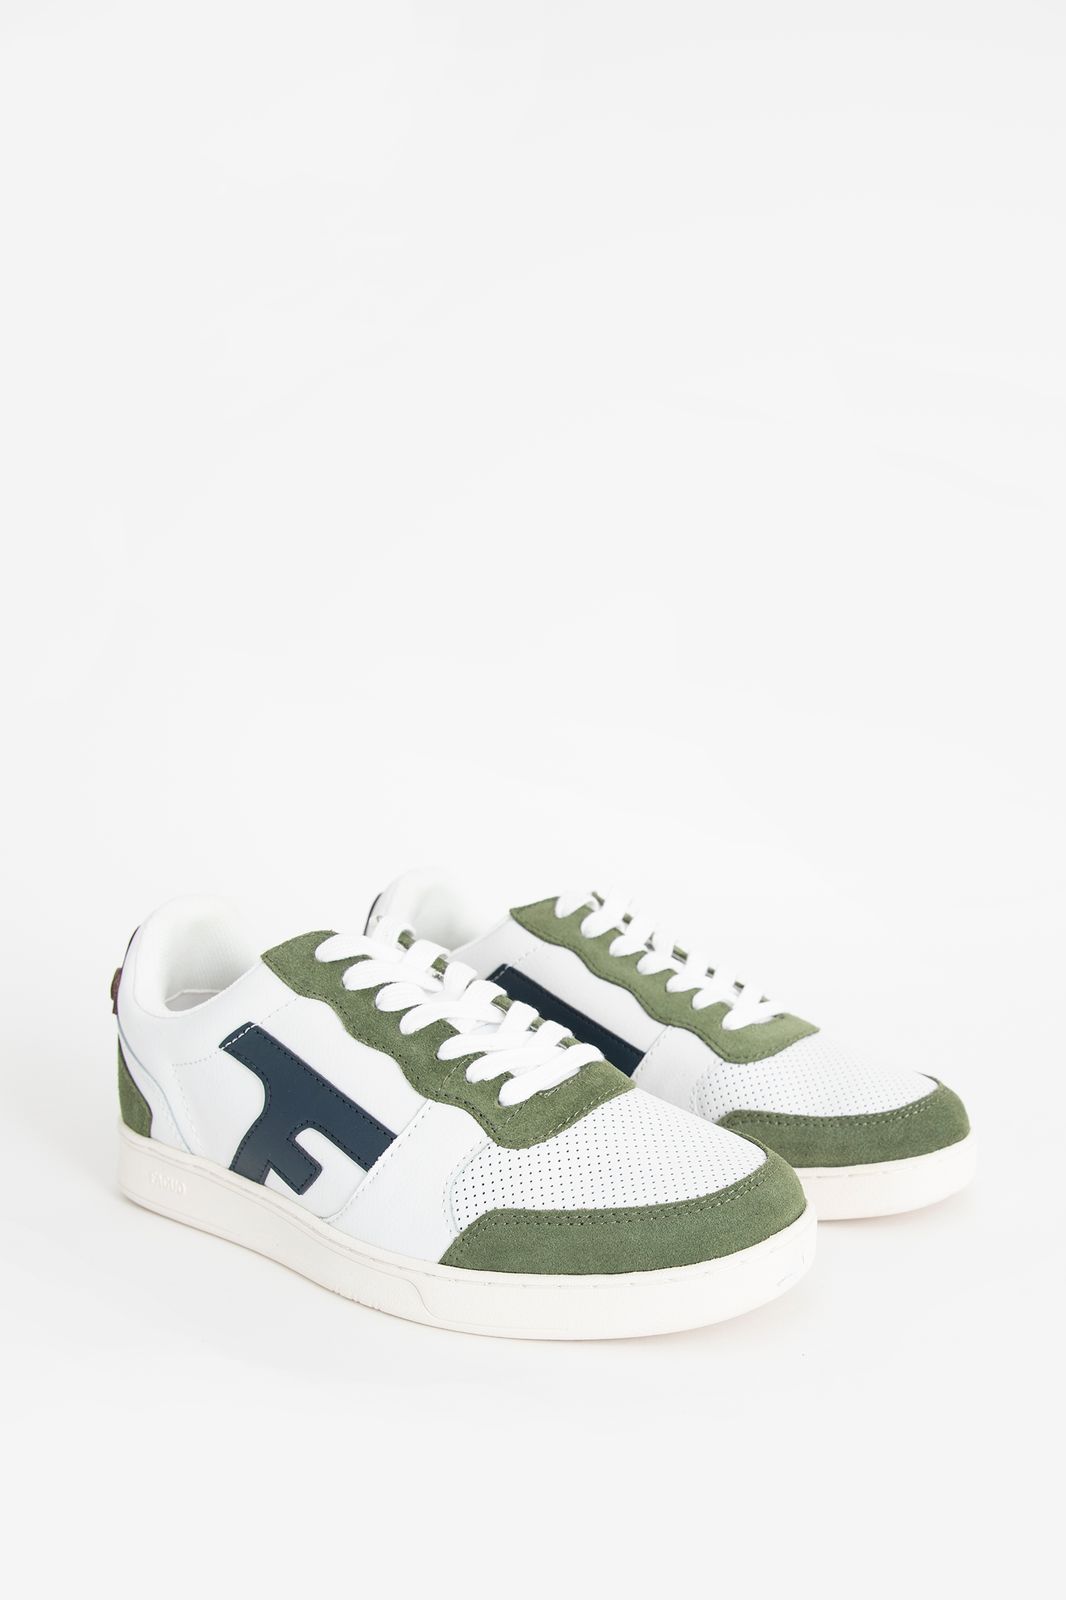 Faguo witte sneakers met groen detail